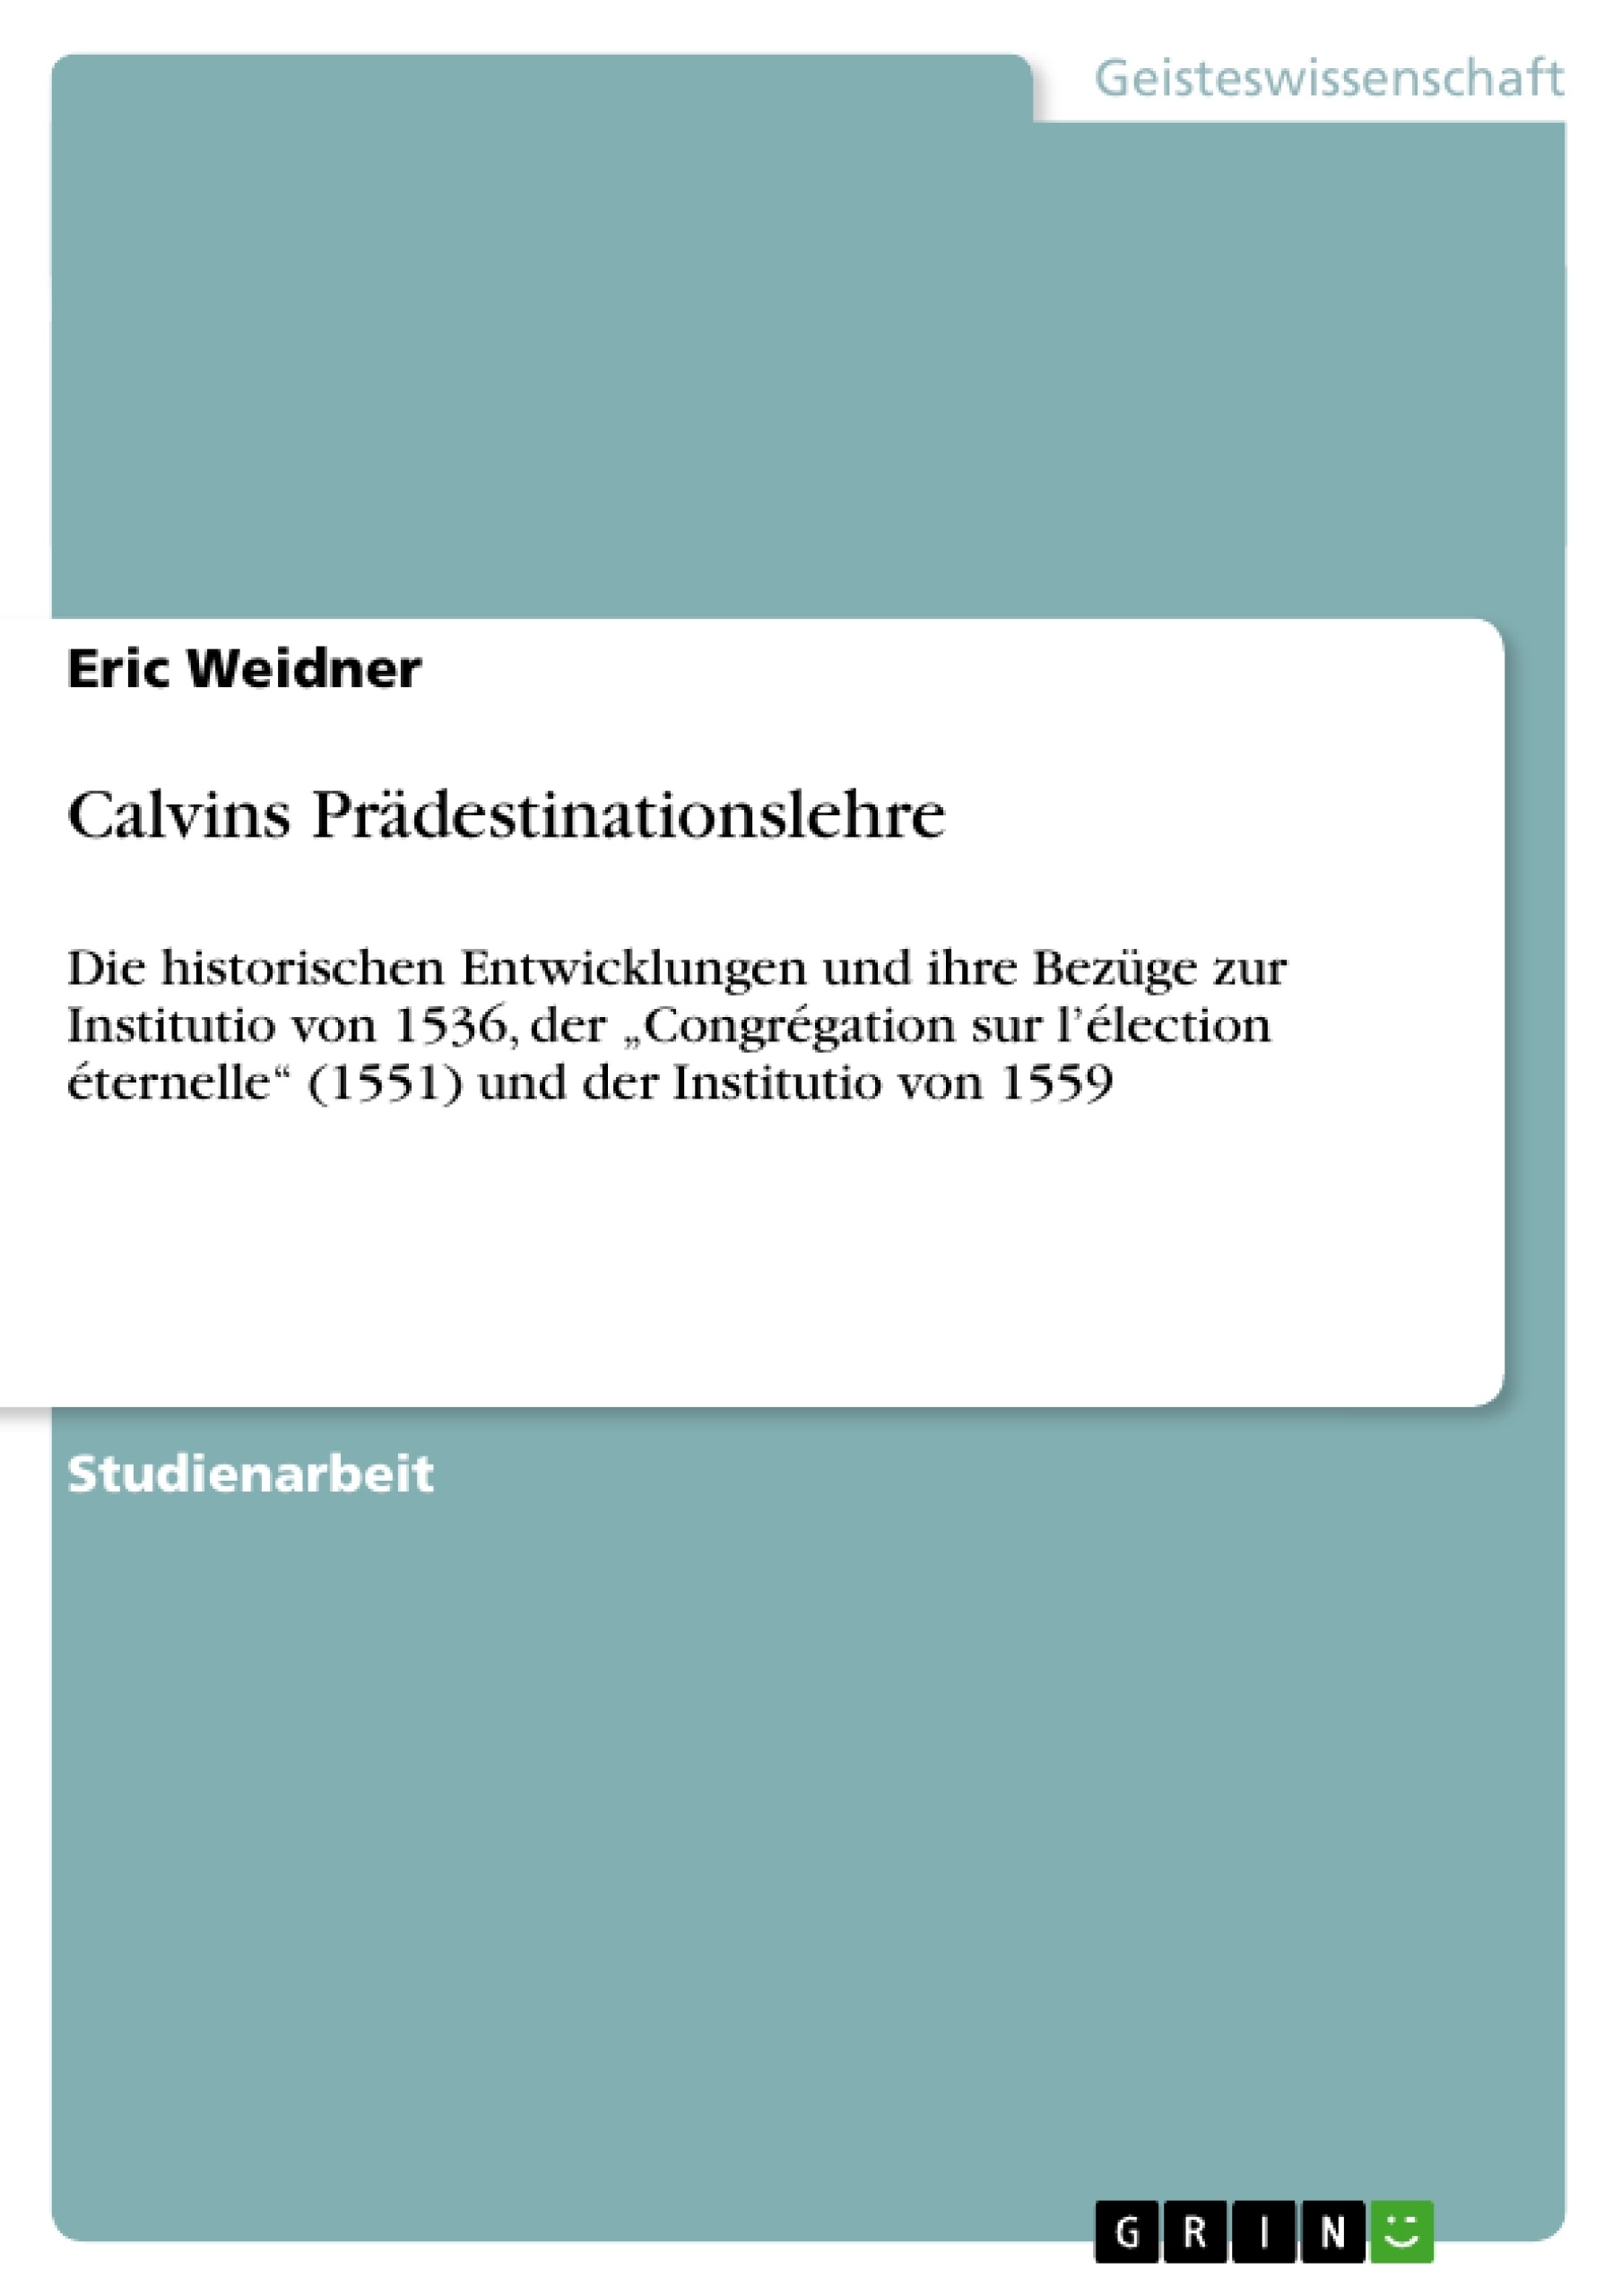 Título: Calvins Prädestinationslehre